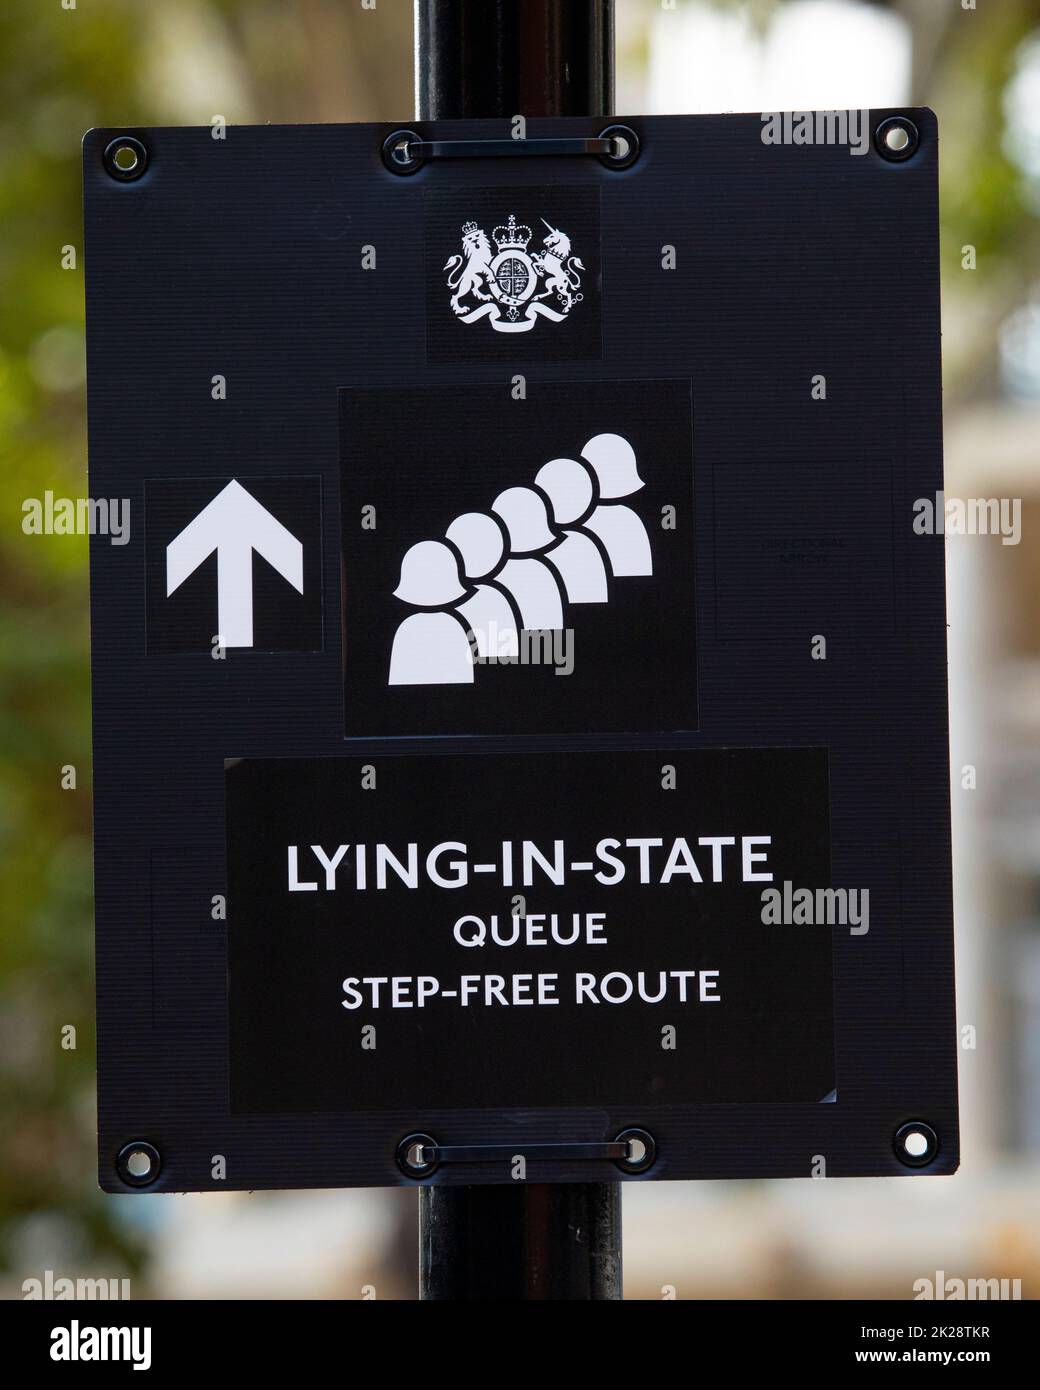 Londres, Royaume-Uni - 14 septembre 2022: Un panneau indiquant la direction pour le public qui souhaite faire la queue pour sa Majesté la reine Elizabeth II couché-dans-l'État de W Banque D'Images